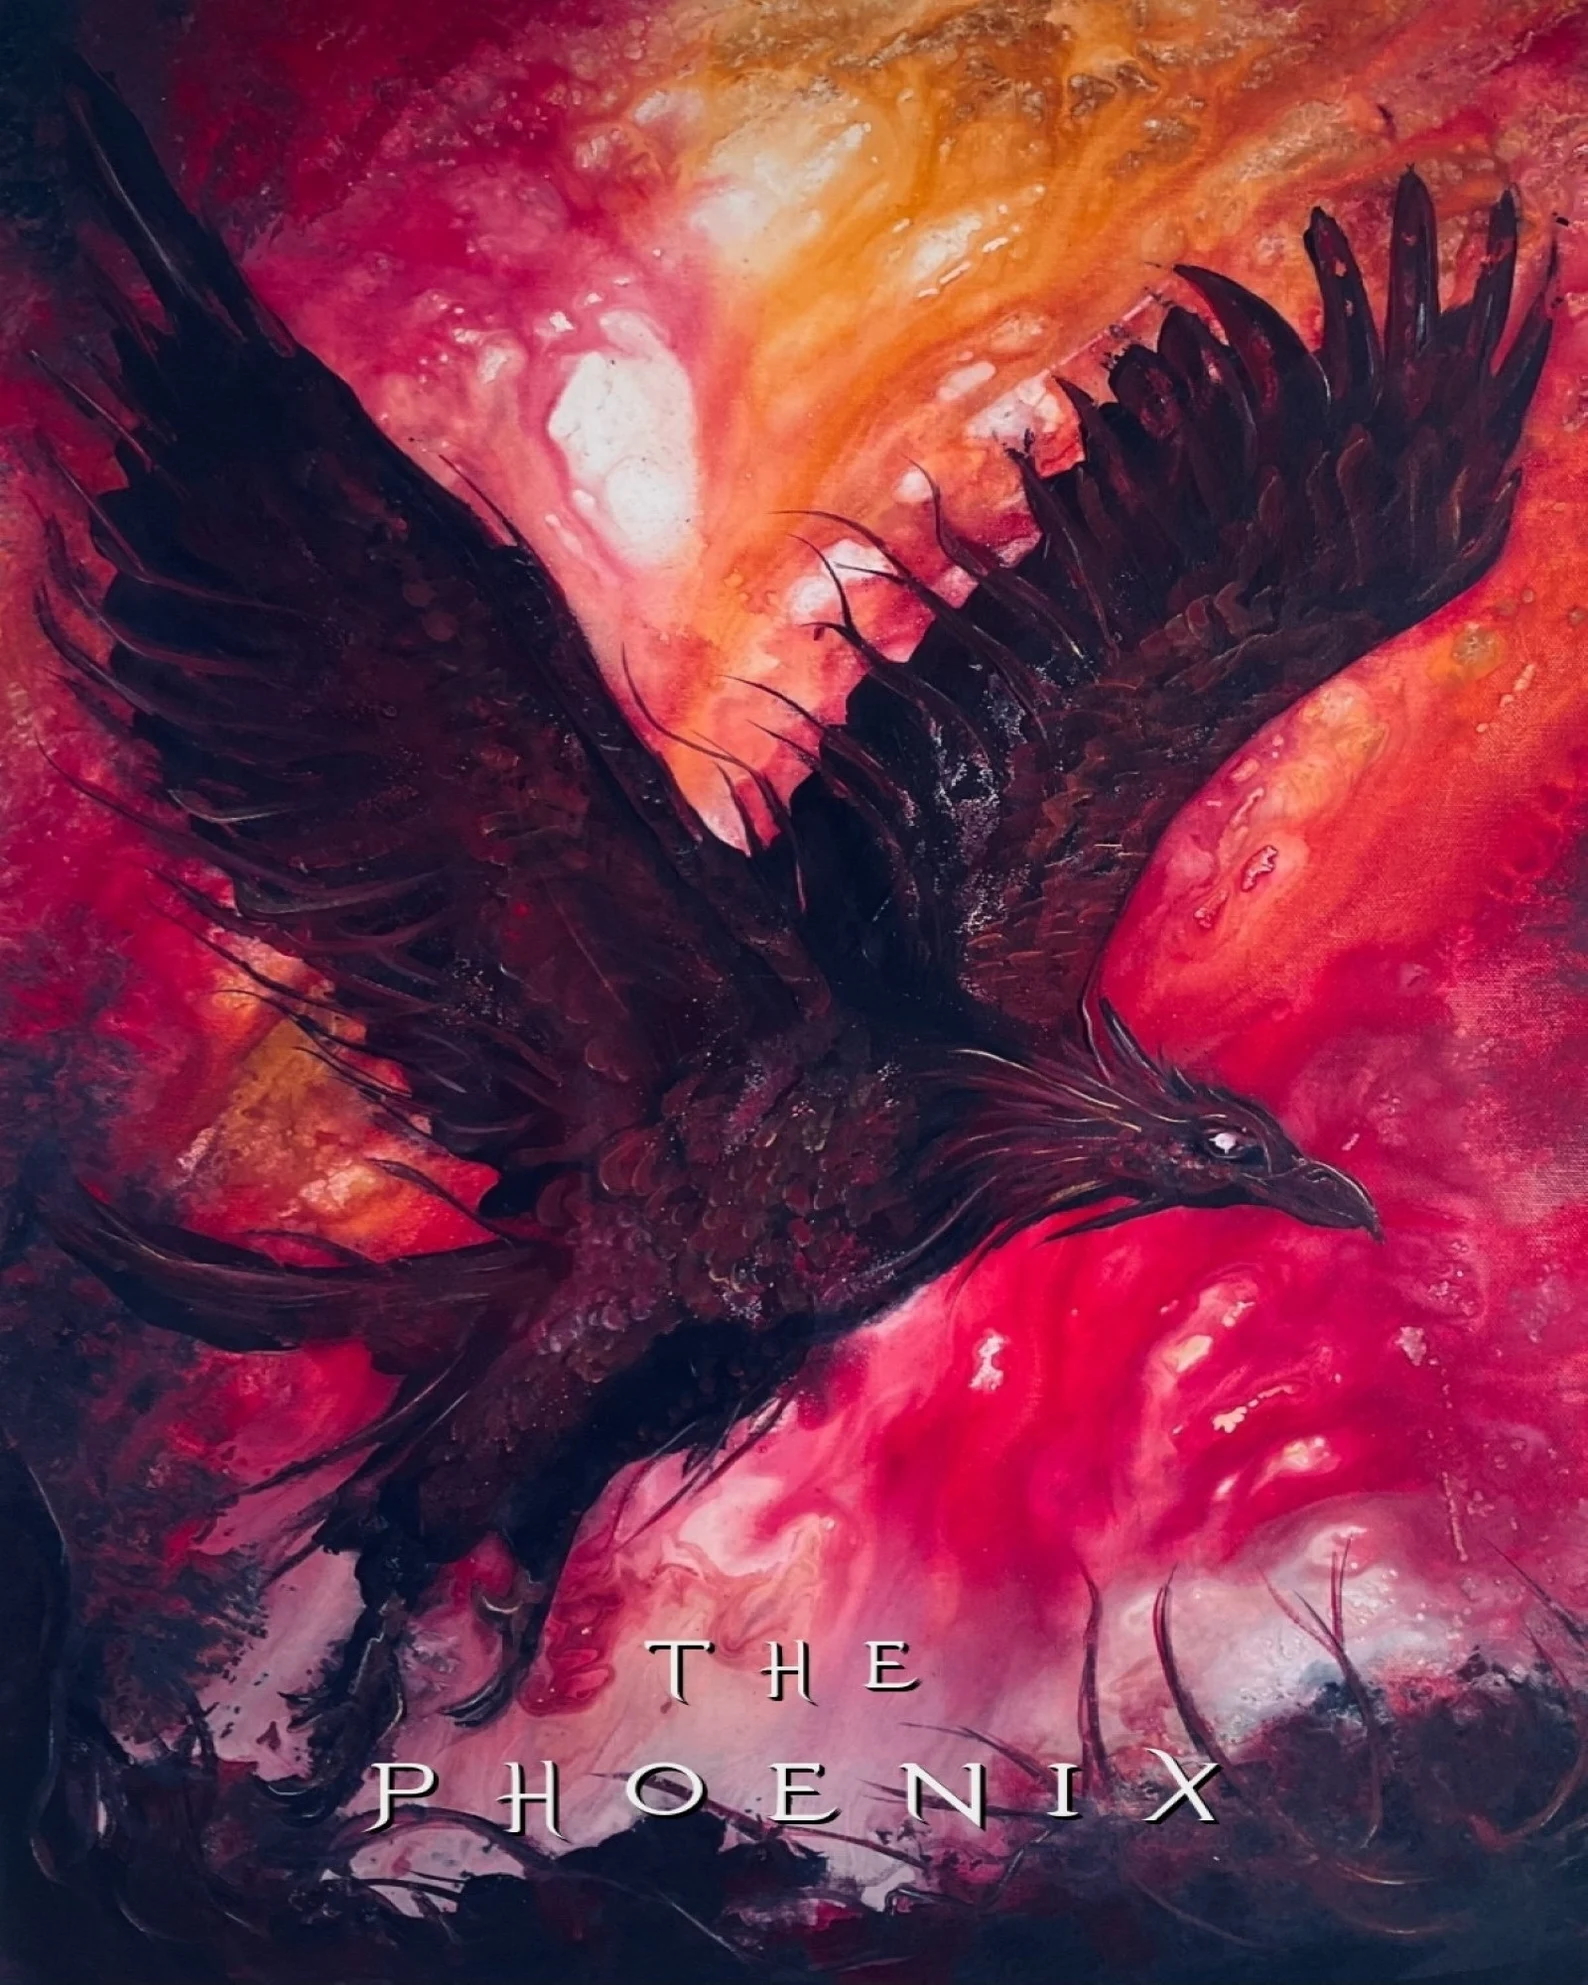 1. The Phoenix